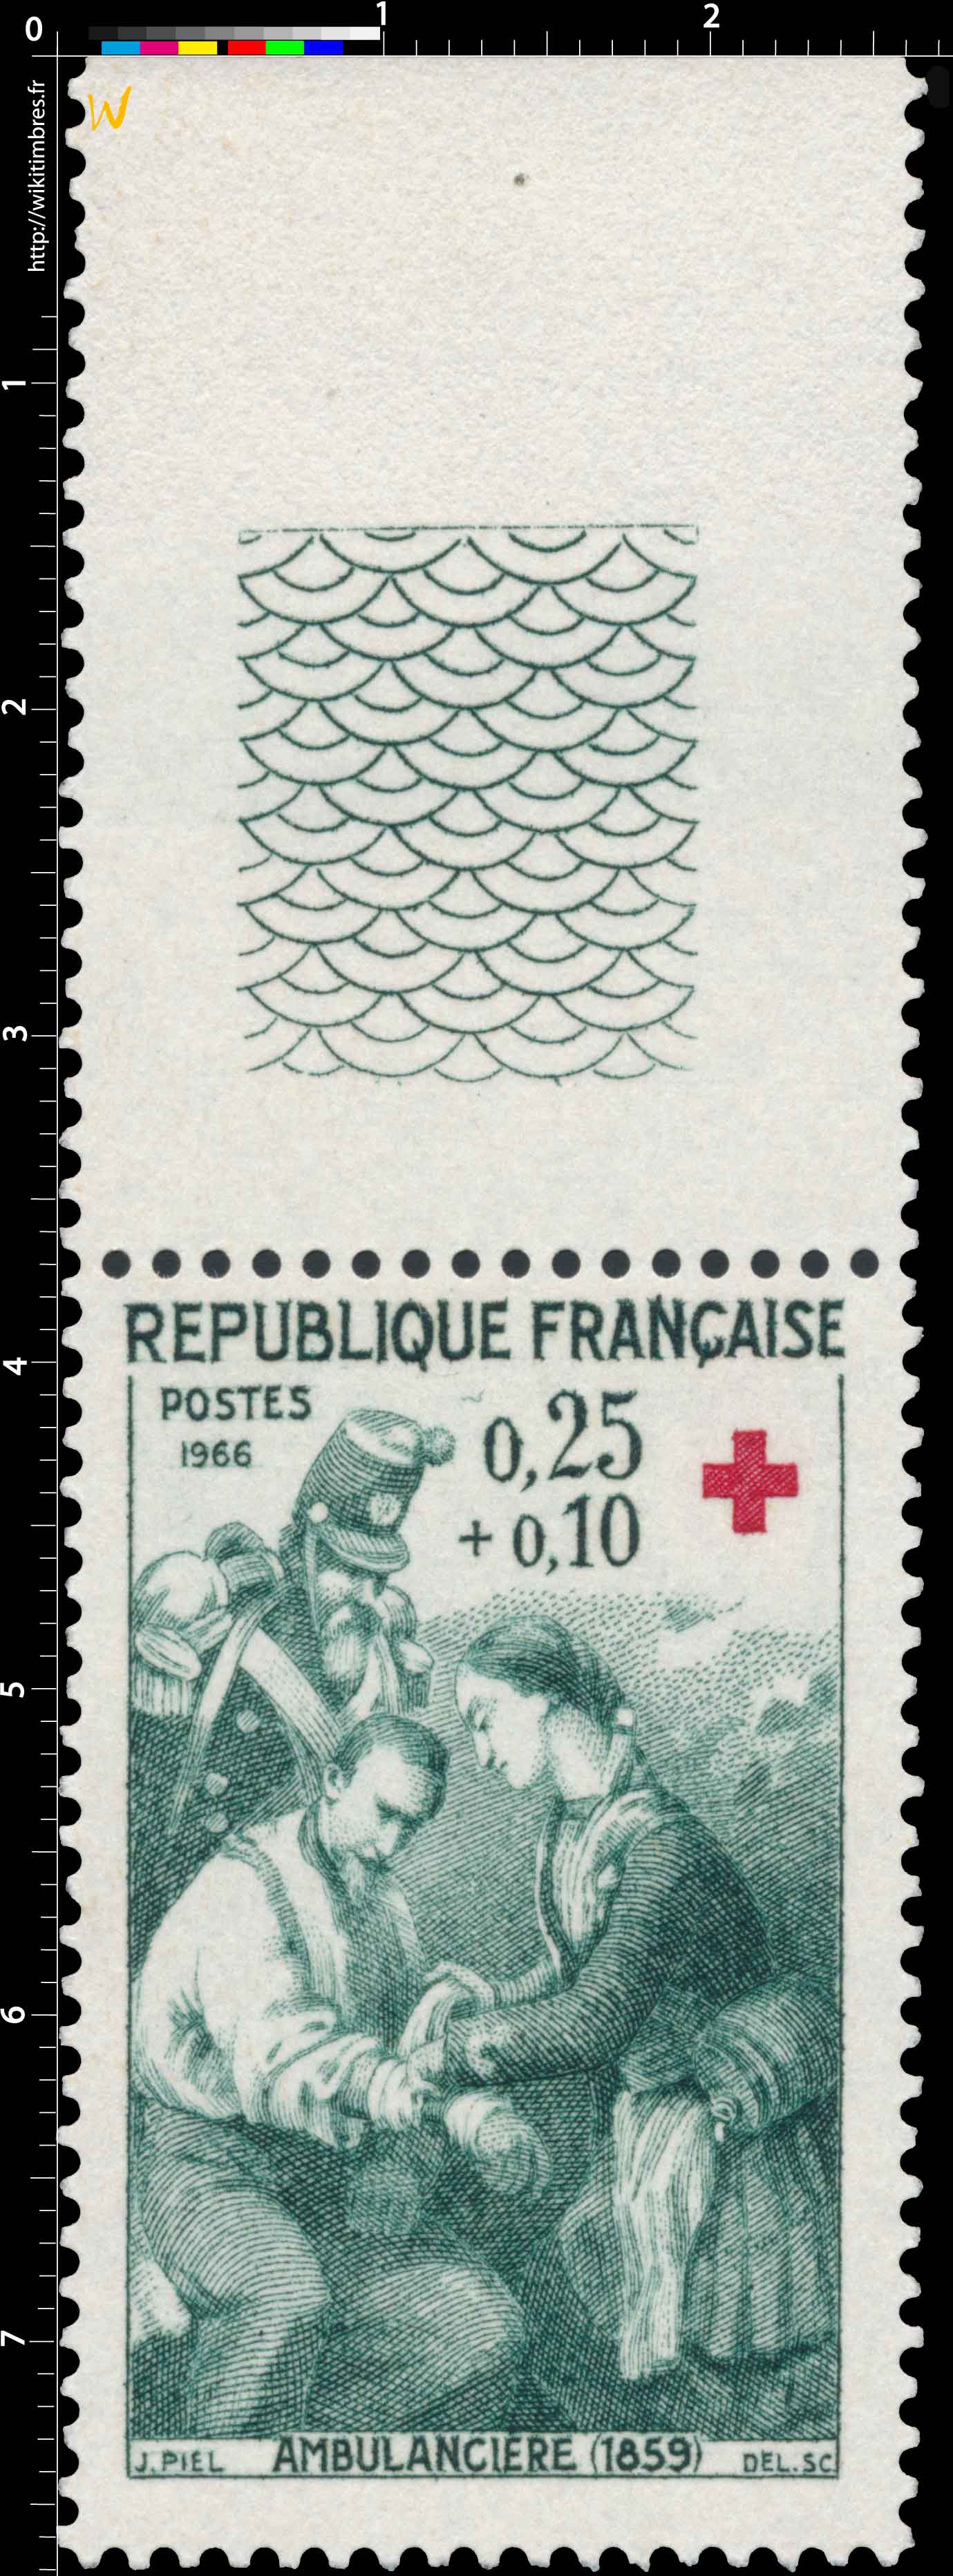 1966 AMBULANCIÈRE (1859)